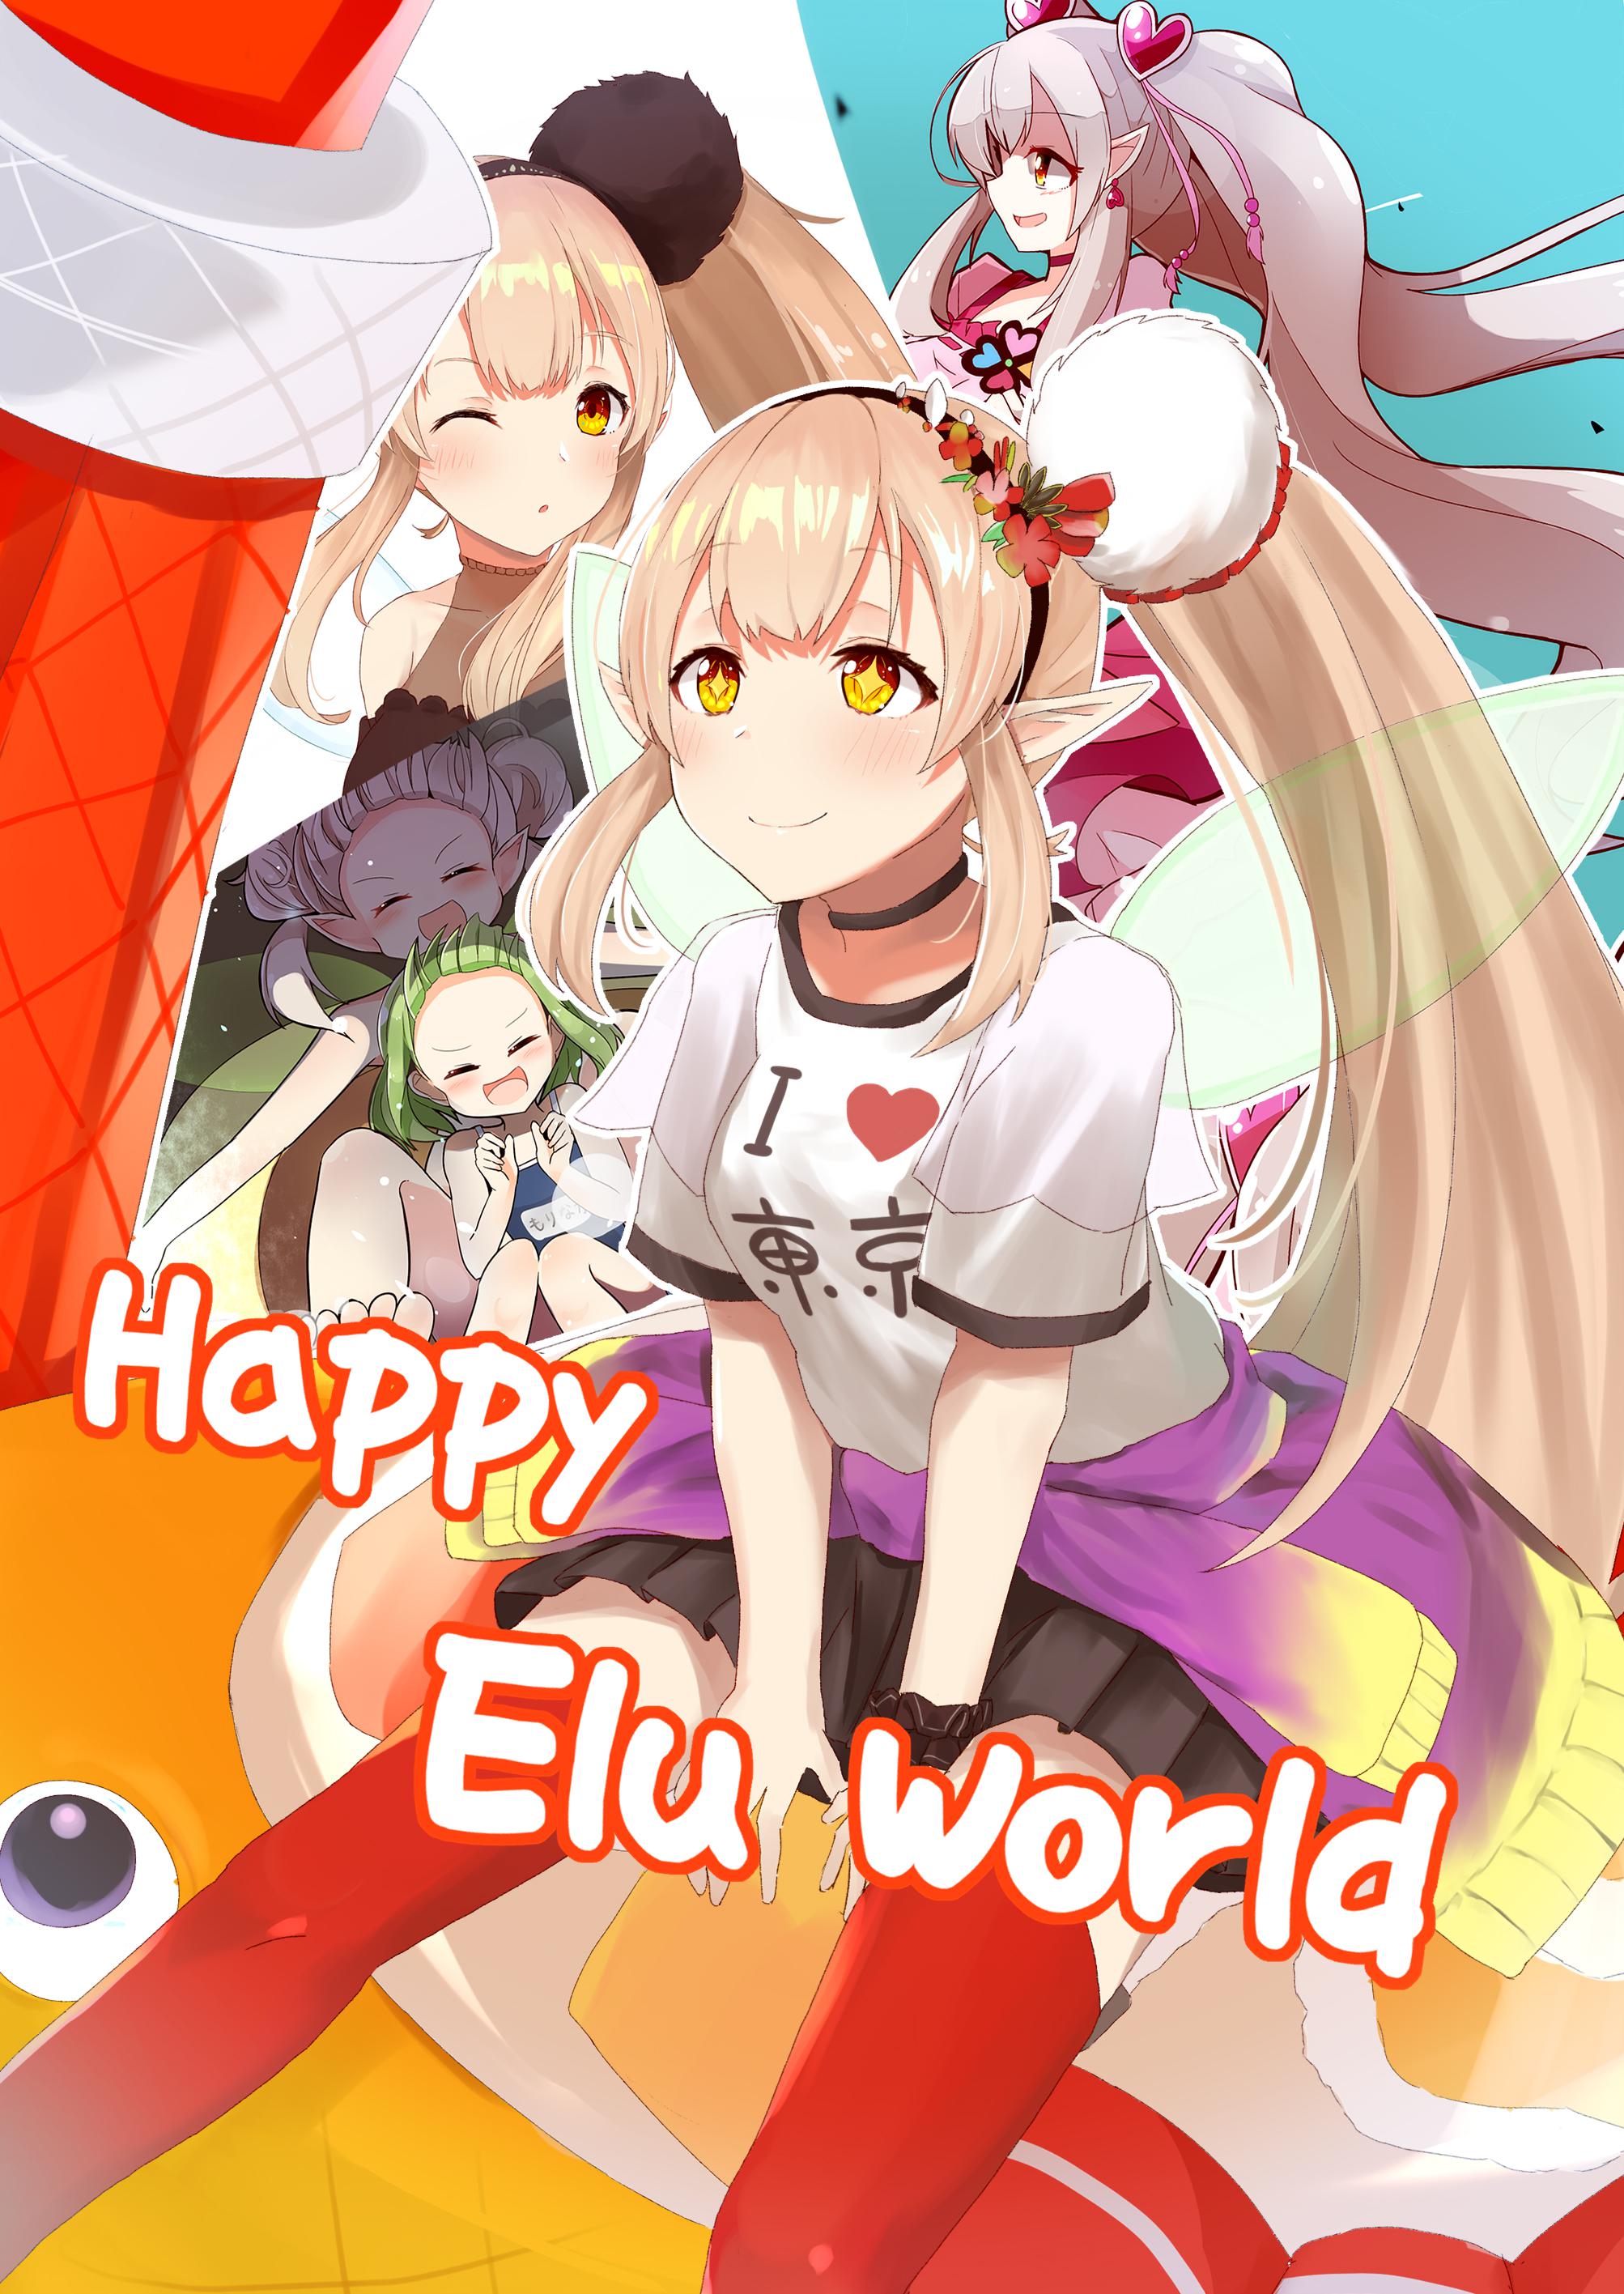 新作品《Happy Elu World》插画图片壁纸